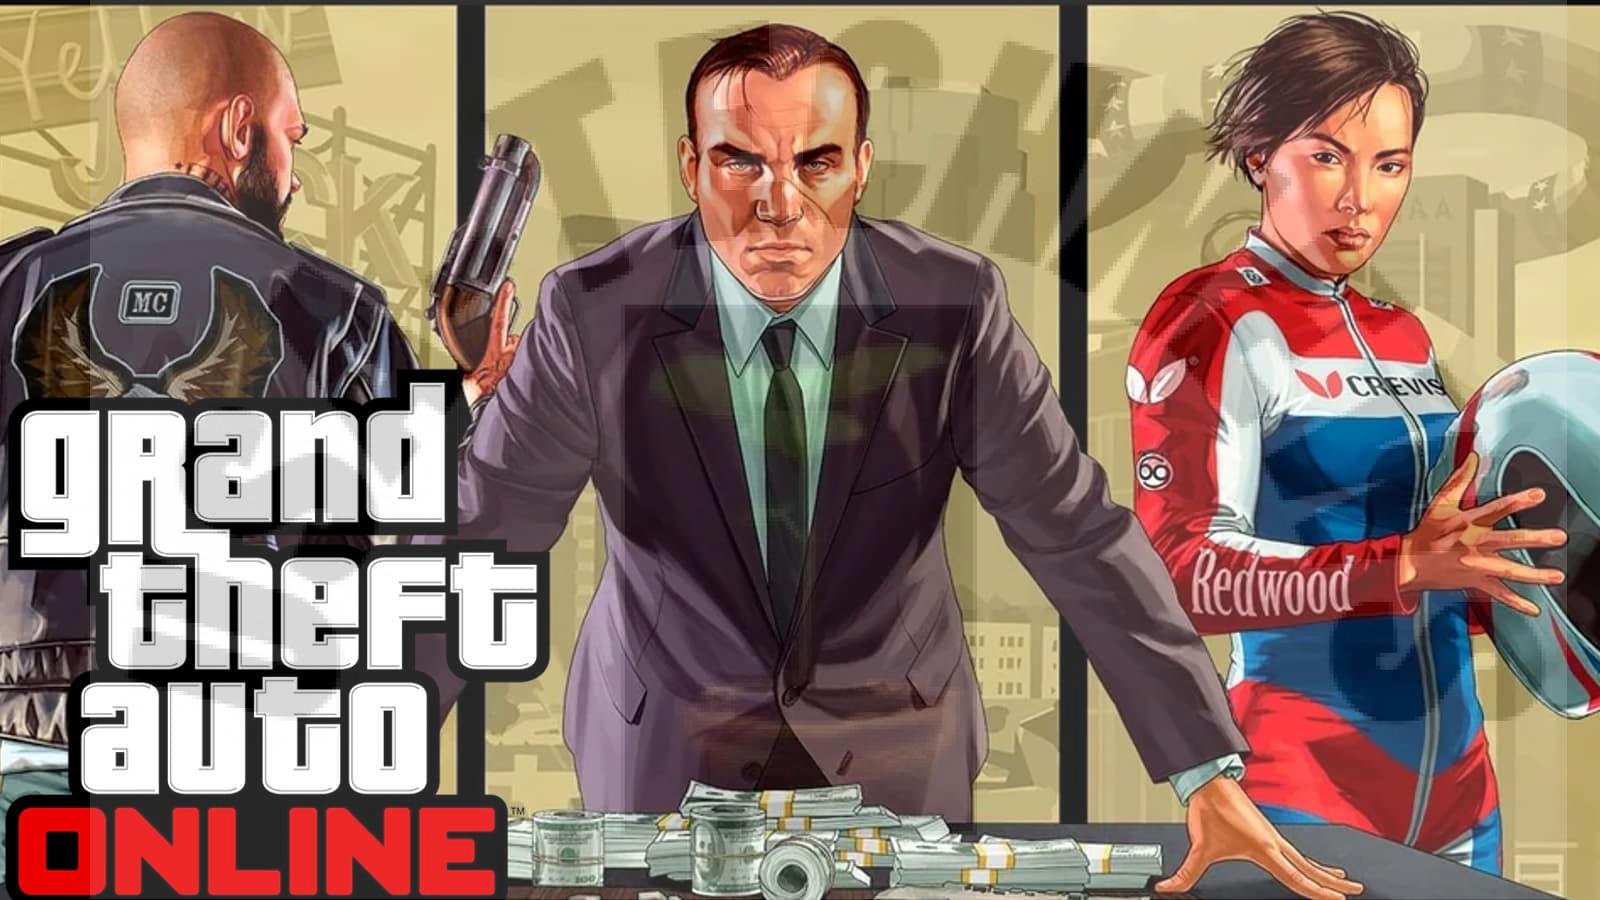 La mise à jour hebdomadaire en ligne de Grand Theft Auto donne à chaque joueur une nouvelle voiture.